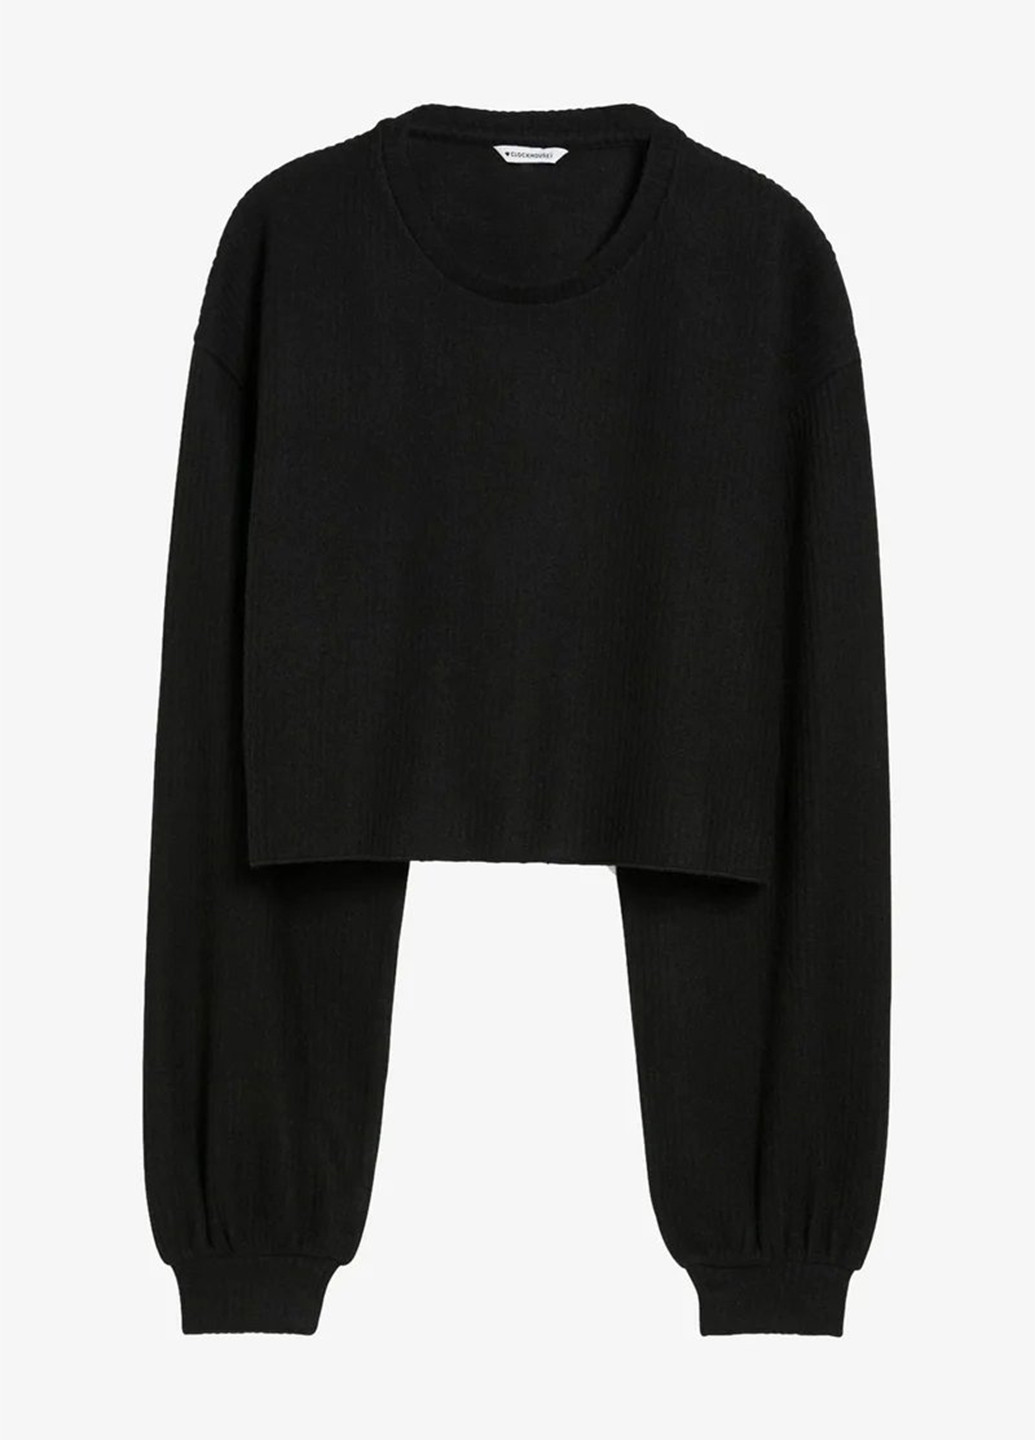 Черный демисезонный свитер джемпер C&A